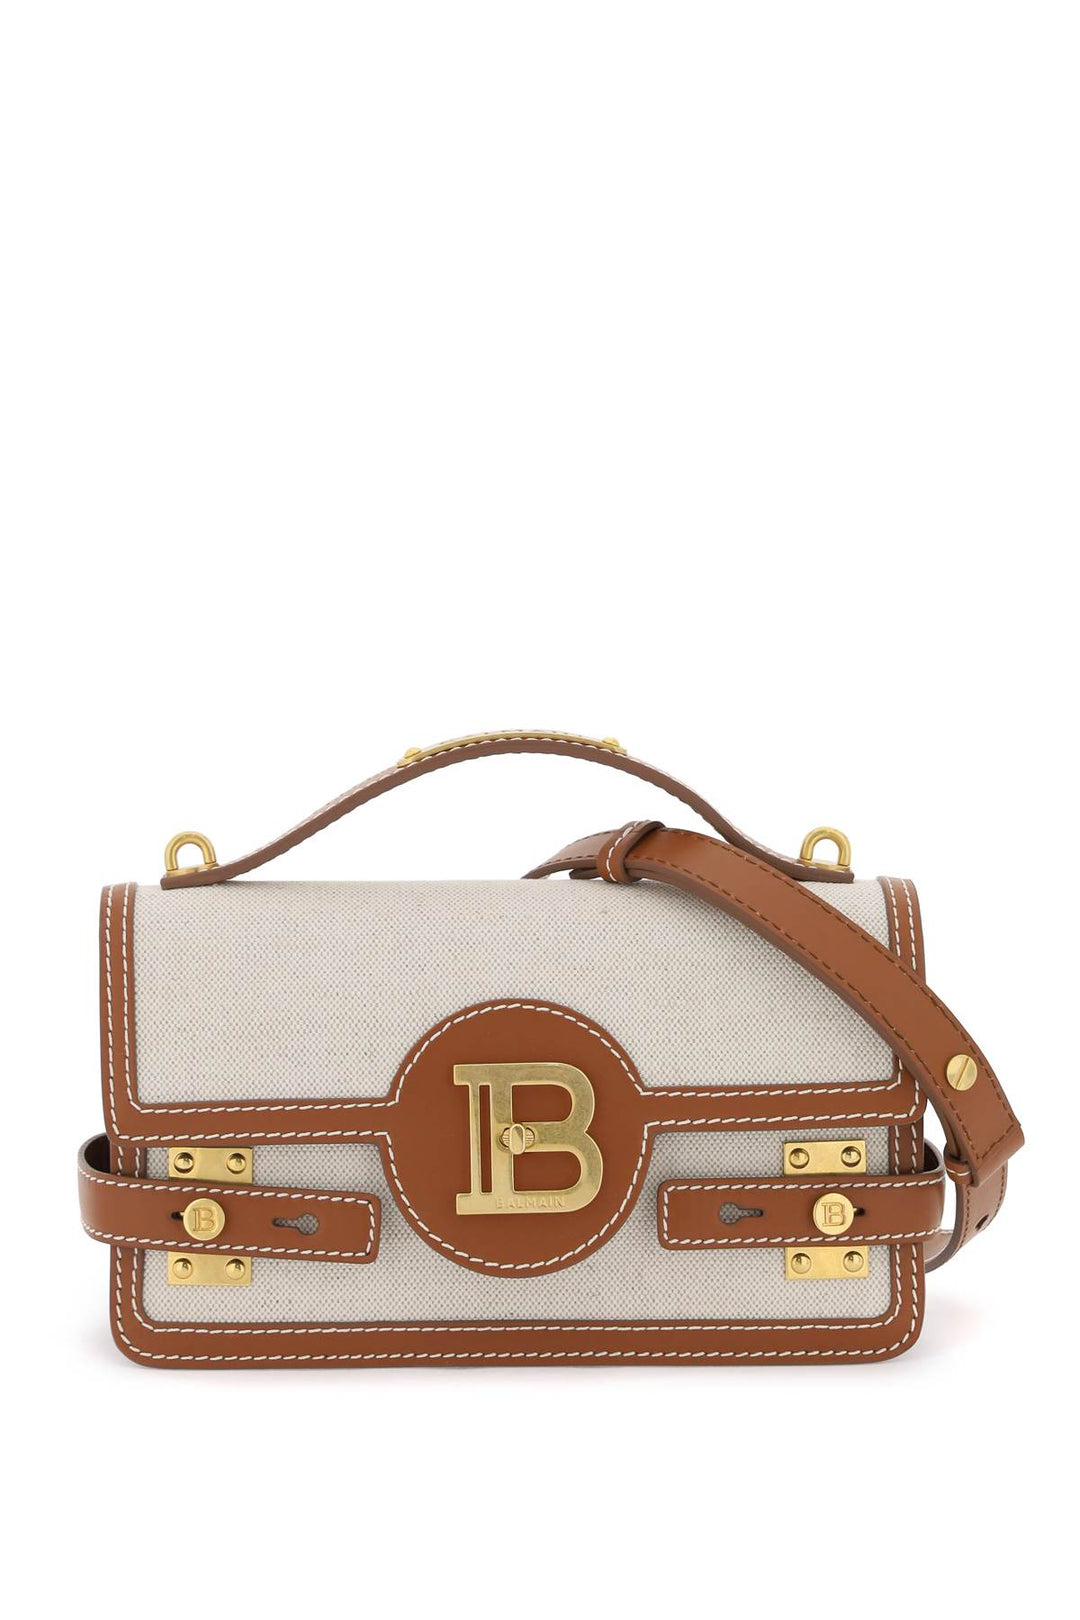 Balmain B Buzz 24 Handbag   Brown